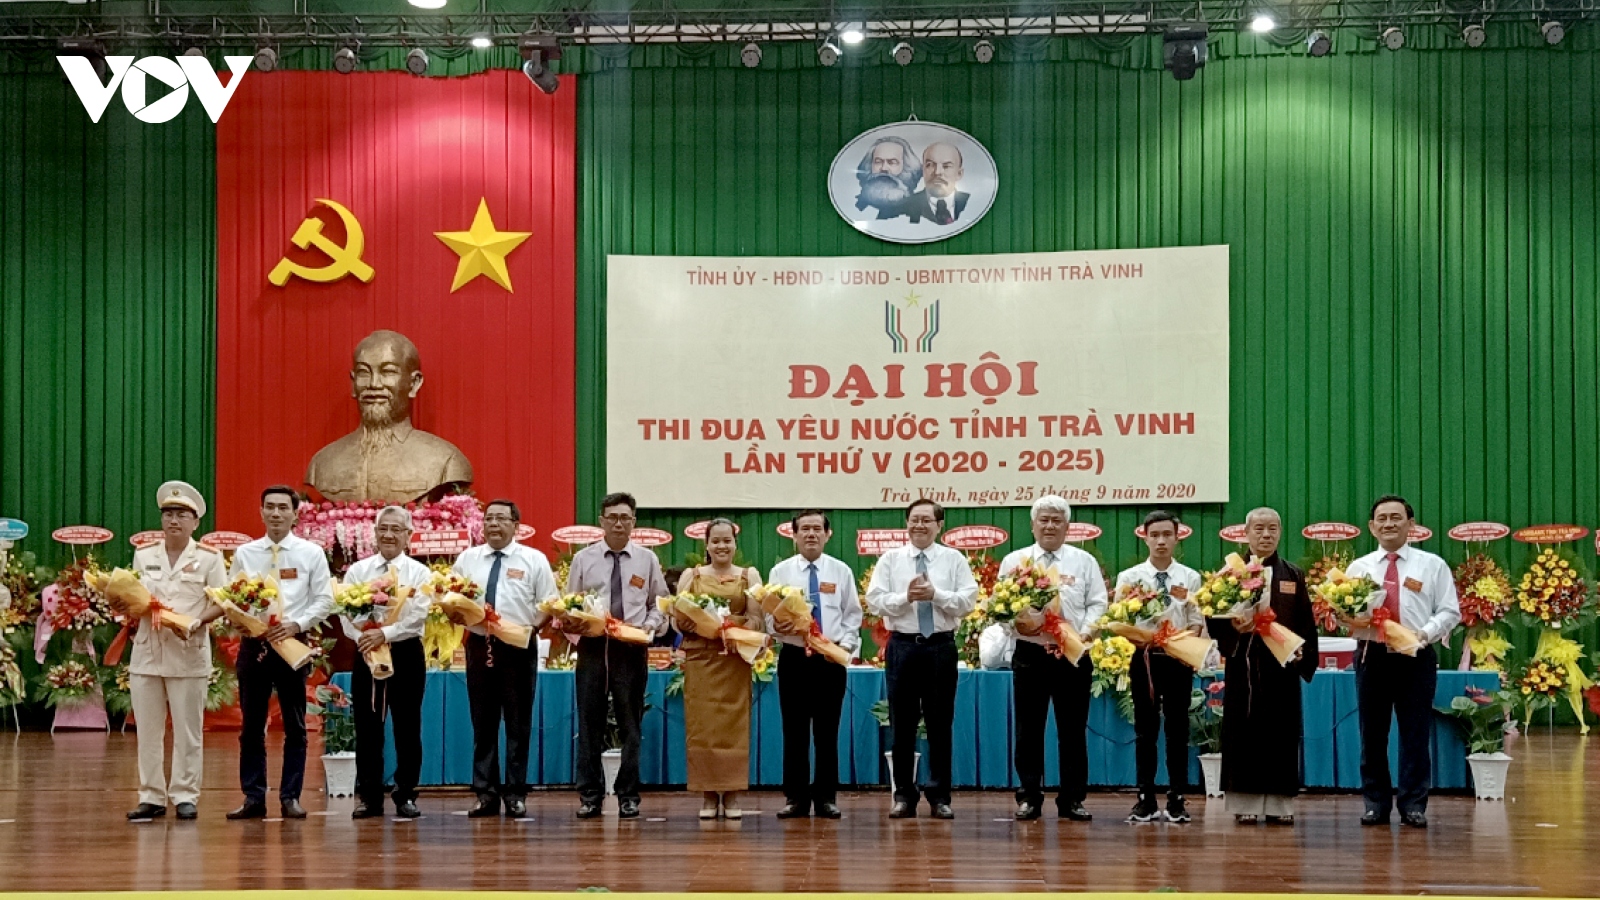 Gần 400 cá nhân, tập thể được khen thưởng tại Đại hội thi đua yêu nước tỉnh Trà Vinh